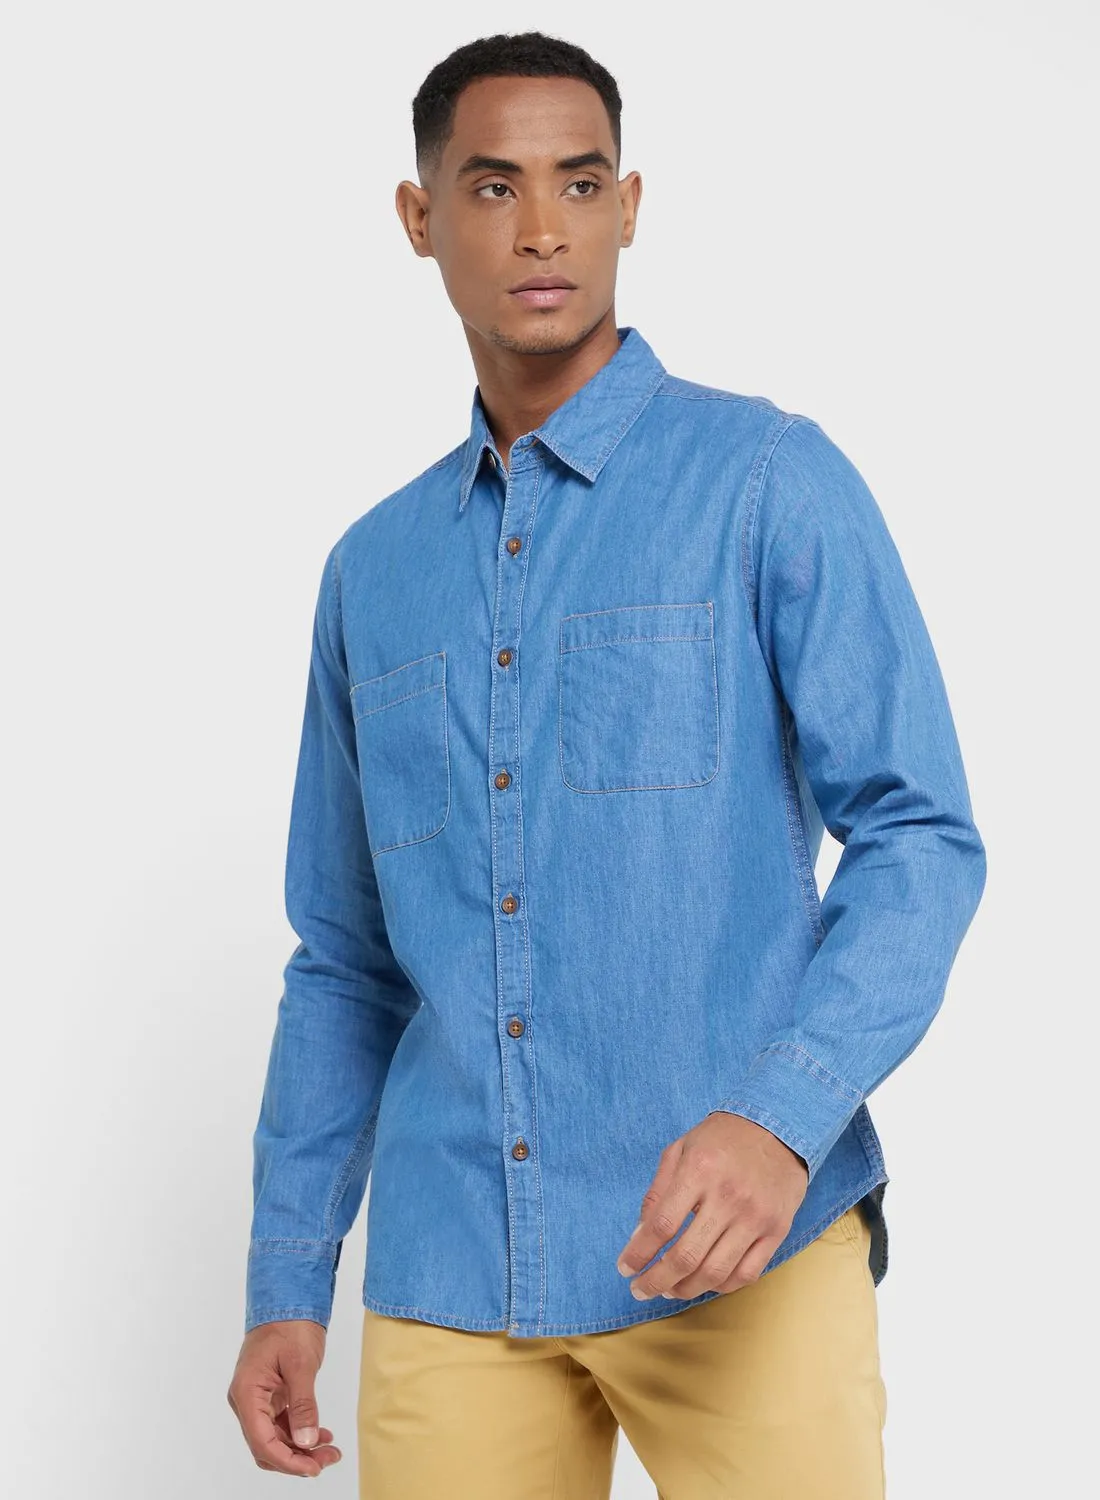 قميص توماس سكوت توماس سكوت الرجالي الأزرق الذكي ذو المقاس النحيف غير الشفاف